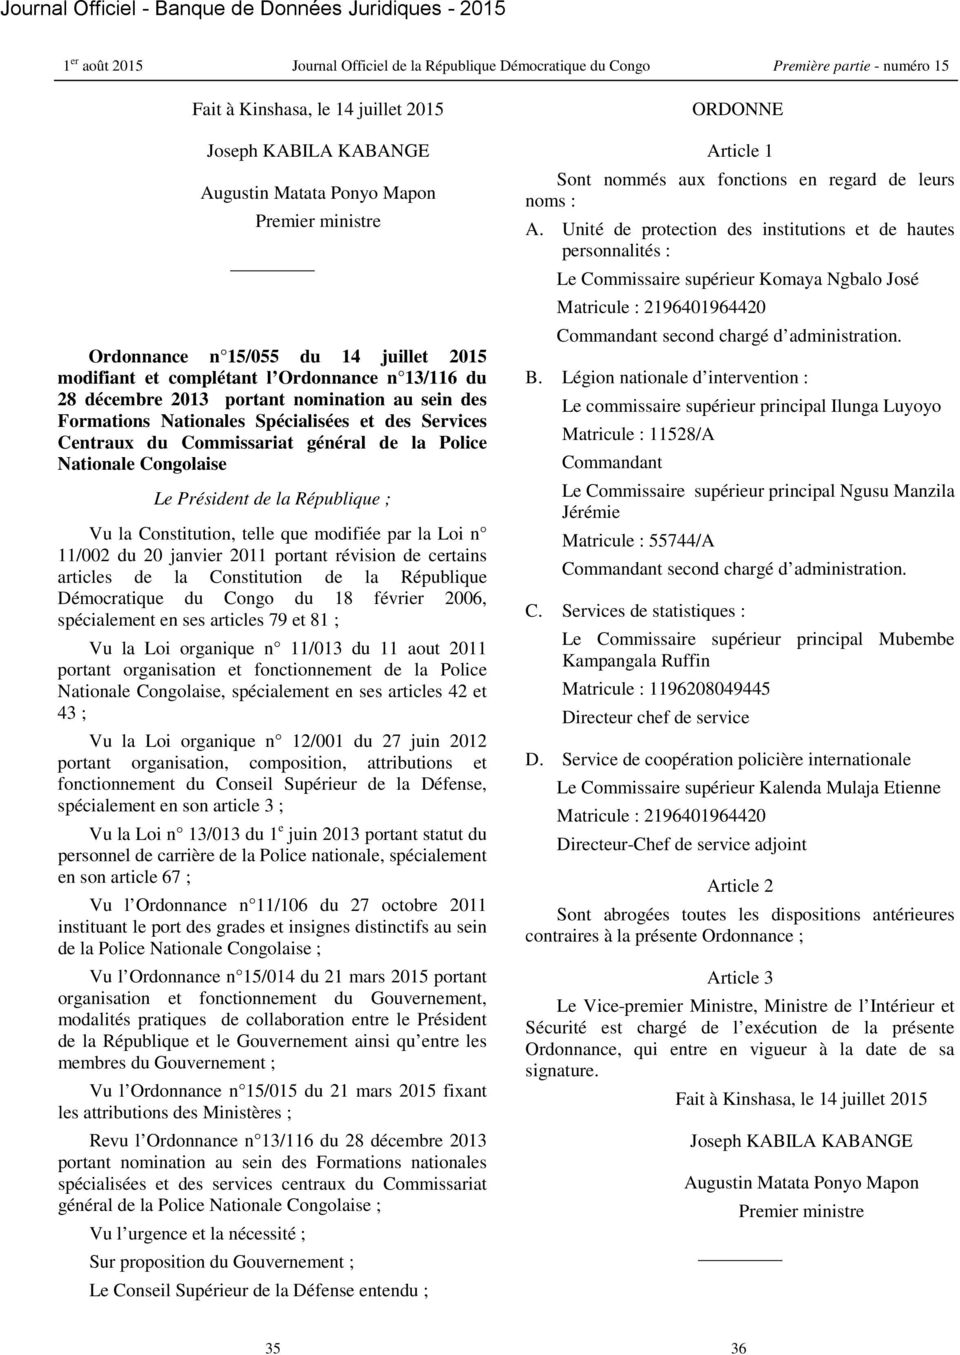 la Constitution, telle que modifiée par la Loi n 11/002 du 20 janvier 2011 portant révision de certains articles de la Constitution de la République Démocratique du Congo du 18 février 2006,